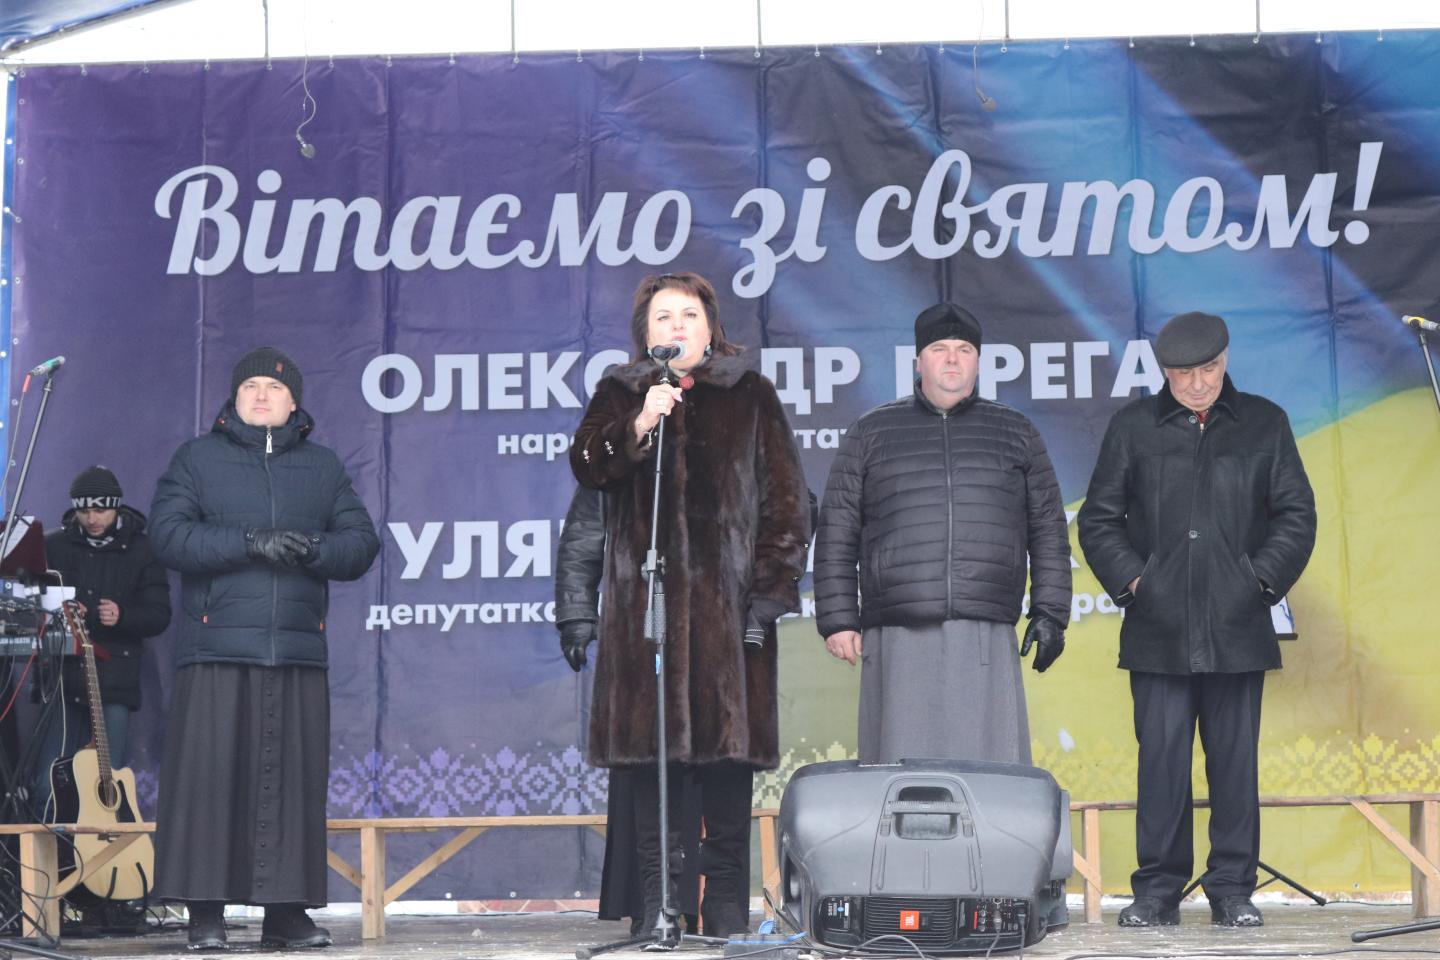 http://dunrada.gov.ua/uploadfile/archive_news/2021/12/27/2021-12-27_3761/images/images-43157.jpg